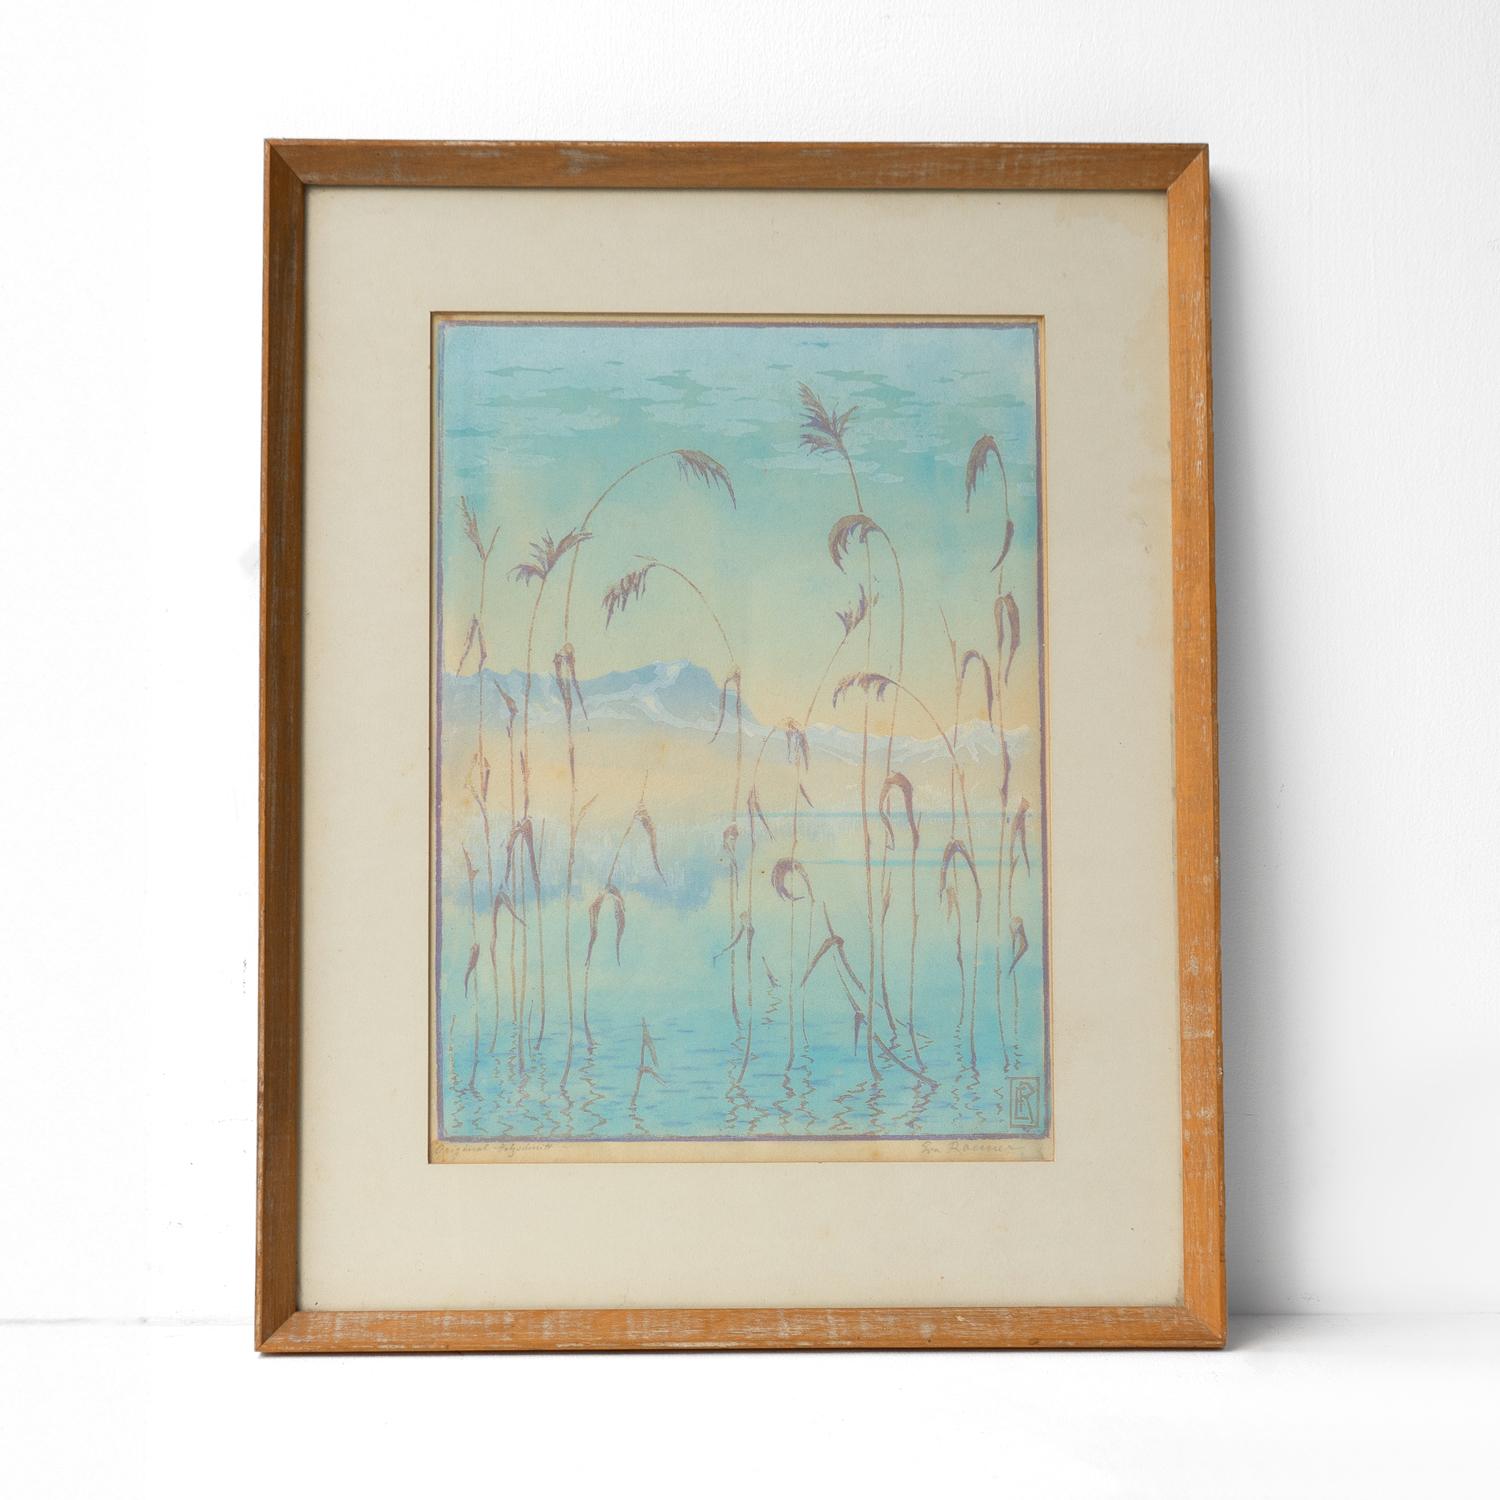 GRAVURE SUR BOIS VINTAGE ENCADRÉE D'EVA ROEMER (1889-1977)
Ce tableau représente un paysage de rêve, avec une vue sur le feuillage au premier plan, sur un lac et sur des montagnes à l'arrière-plan, en utilisant une palette de couleurs pastel bleu